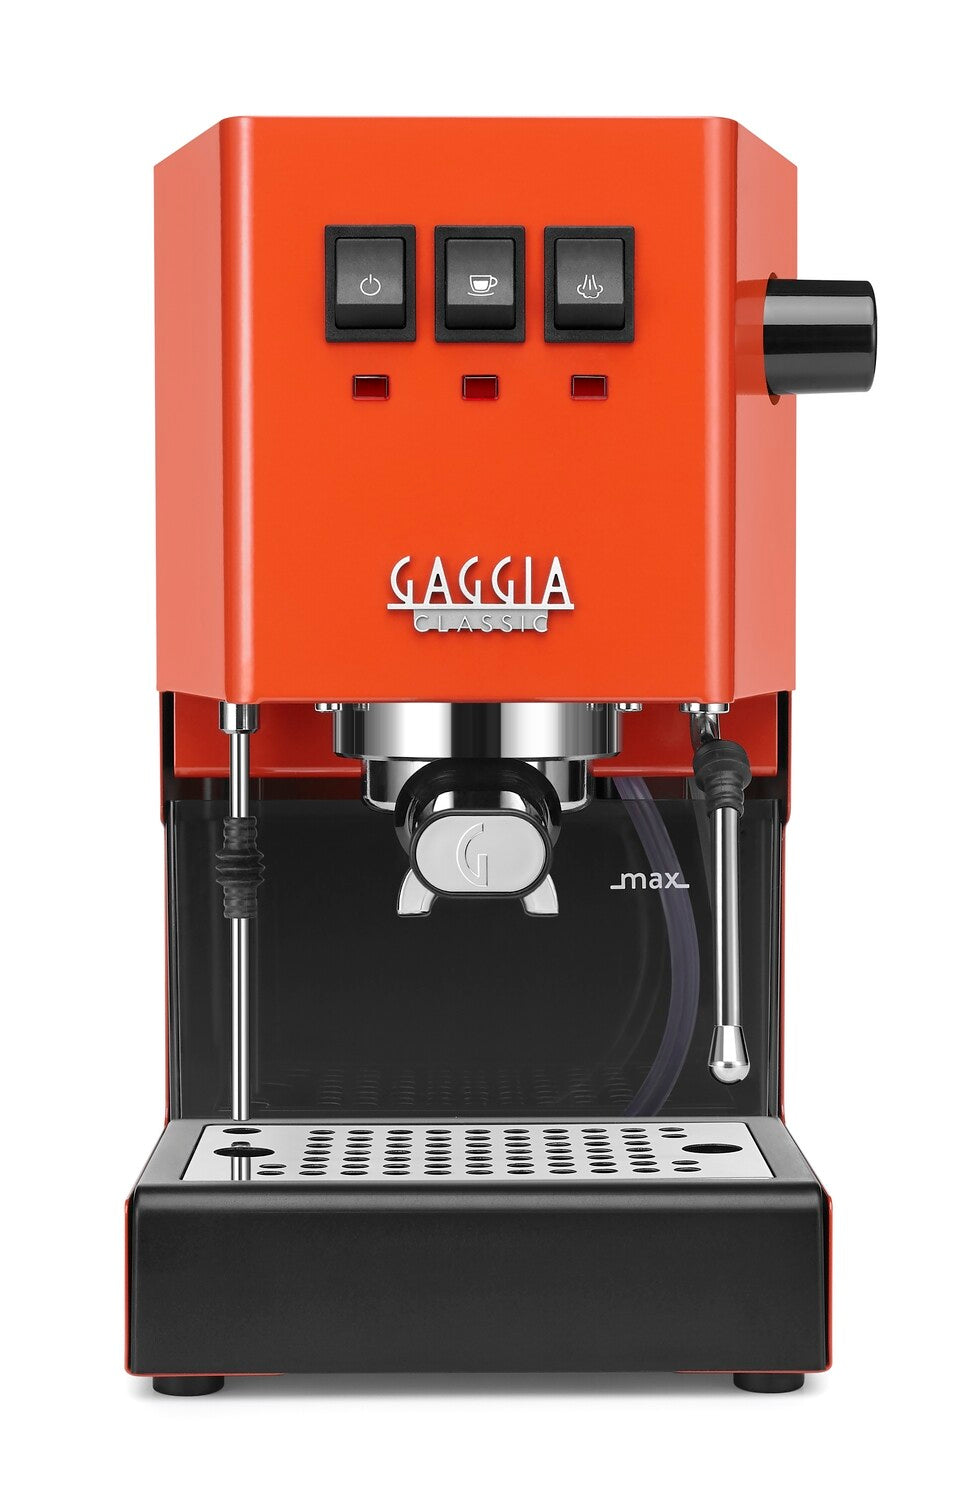 Gaggia Classic 2019 COLOR - Lobster Red 240V | Manual Espresso Coffee Machine